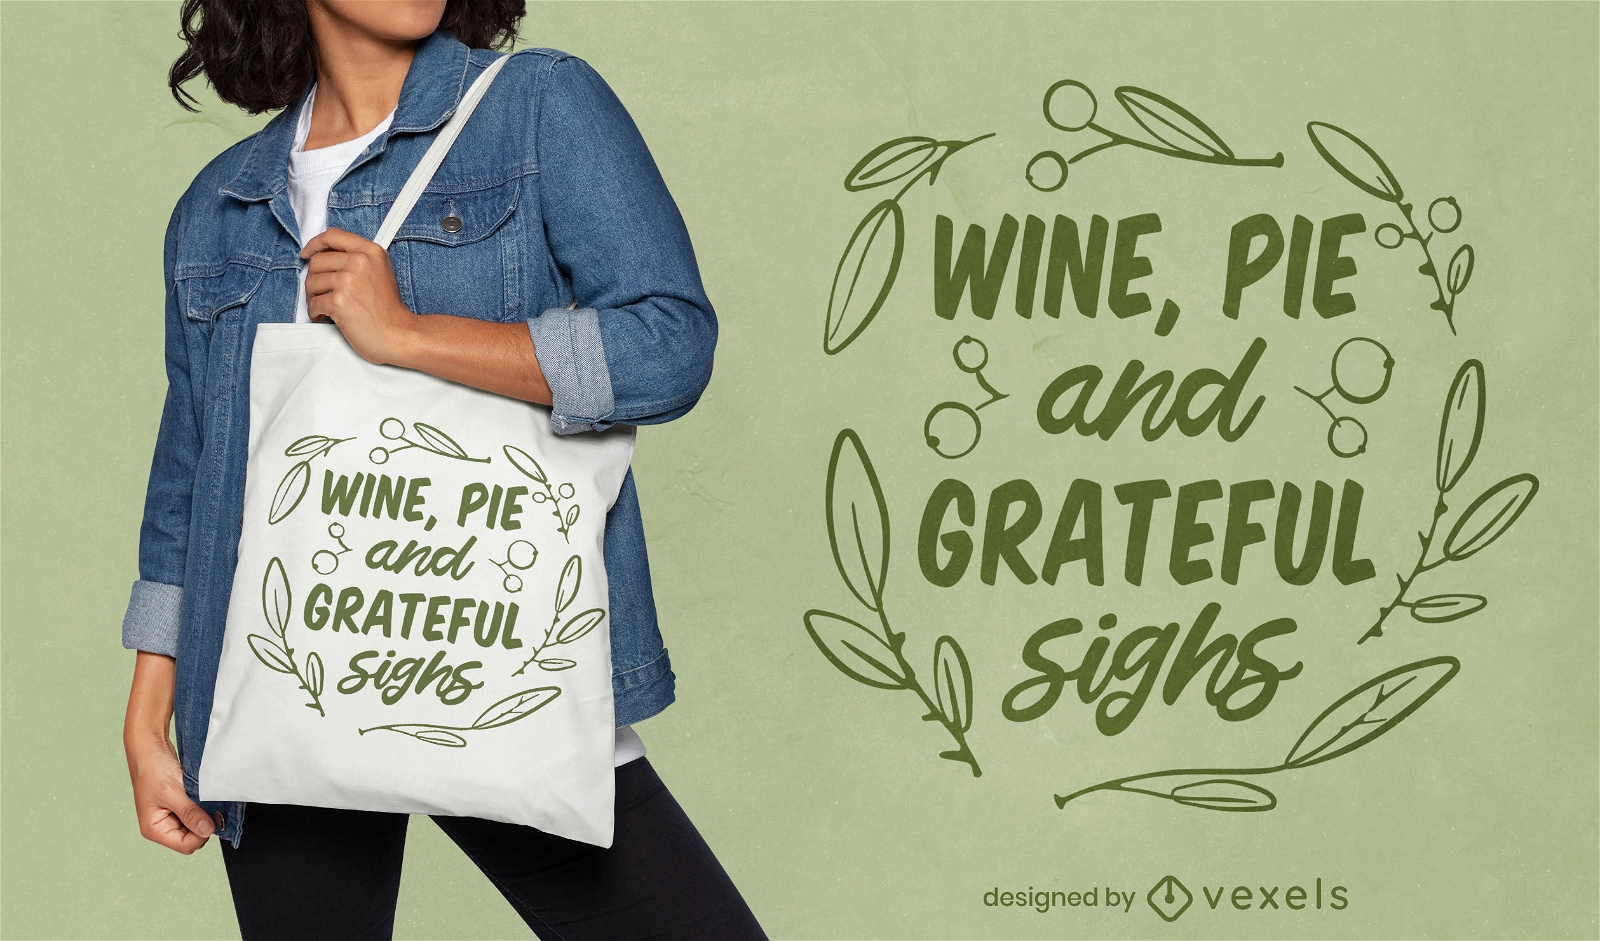 Grateful sighs Thanksgiving tote bag design